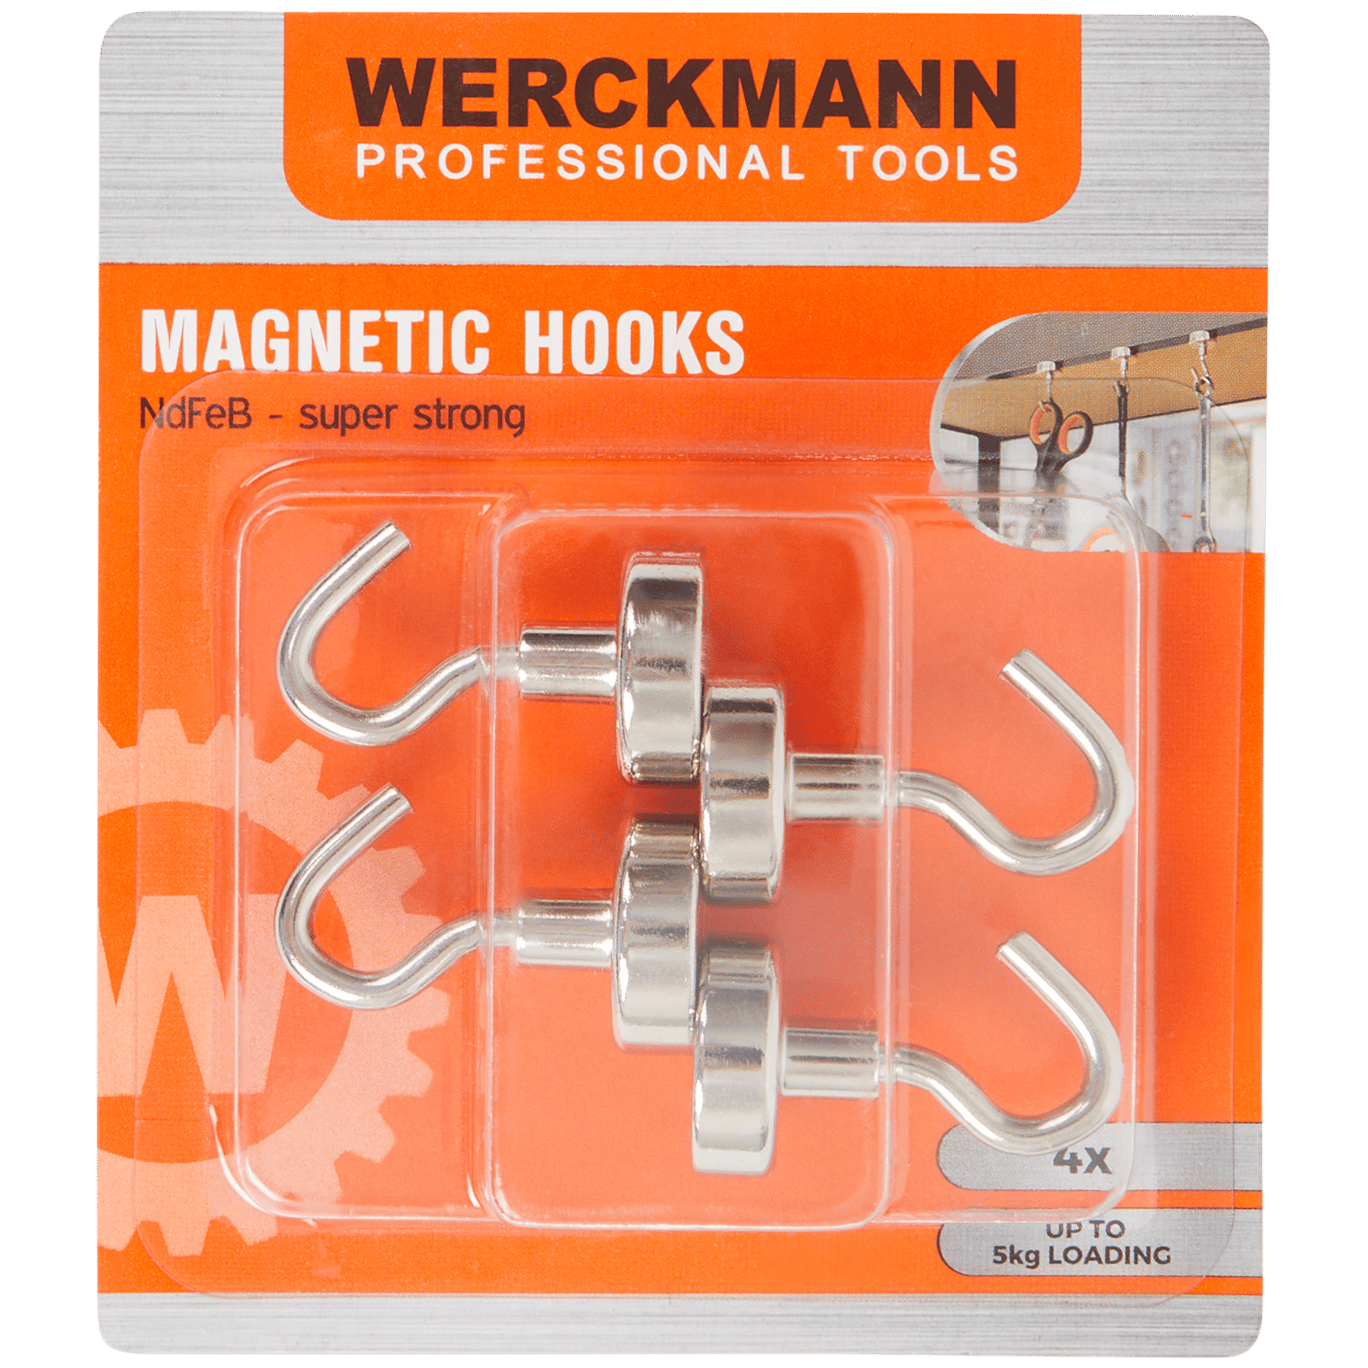 Werckmann magnetische haken